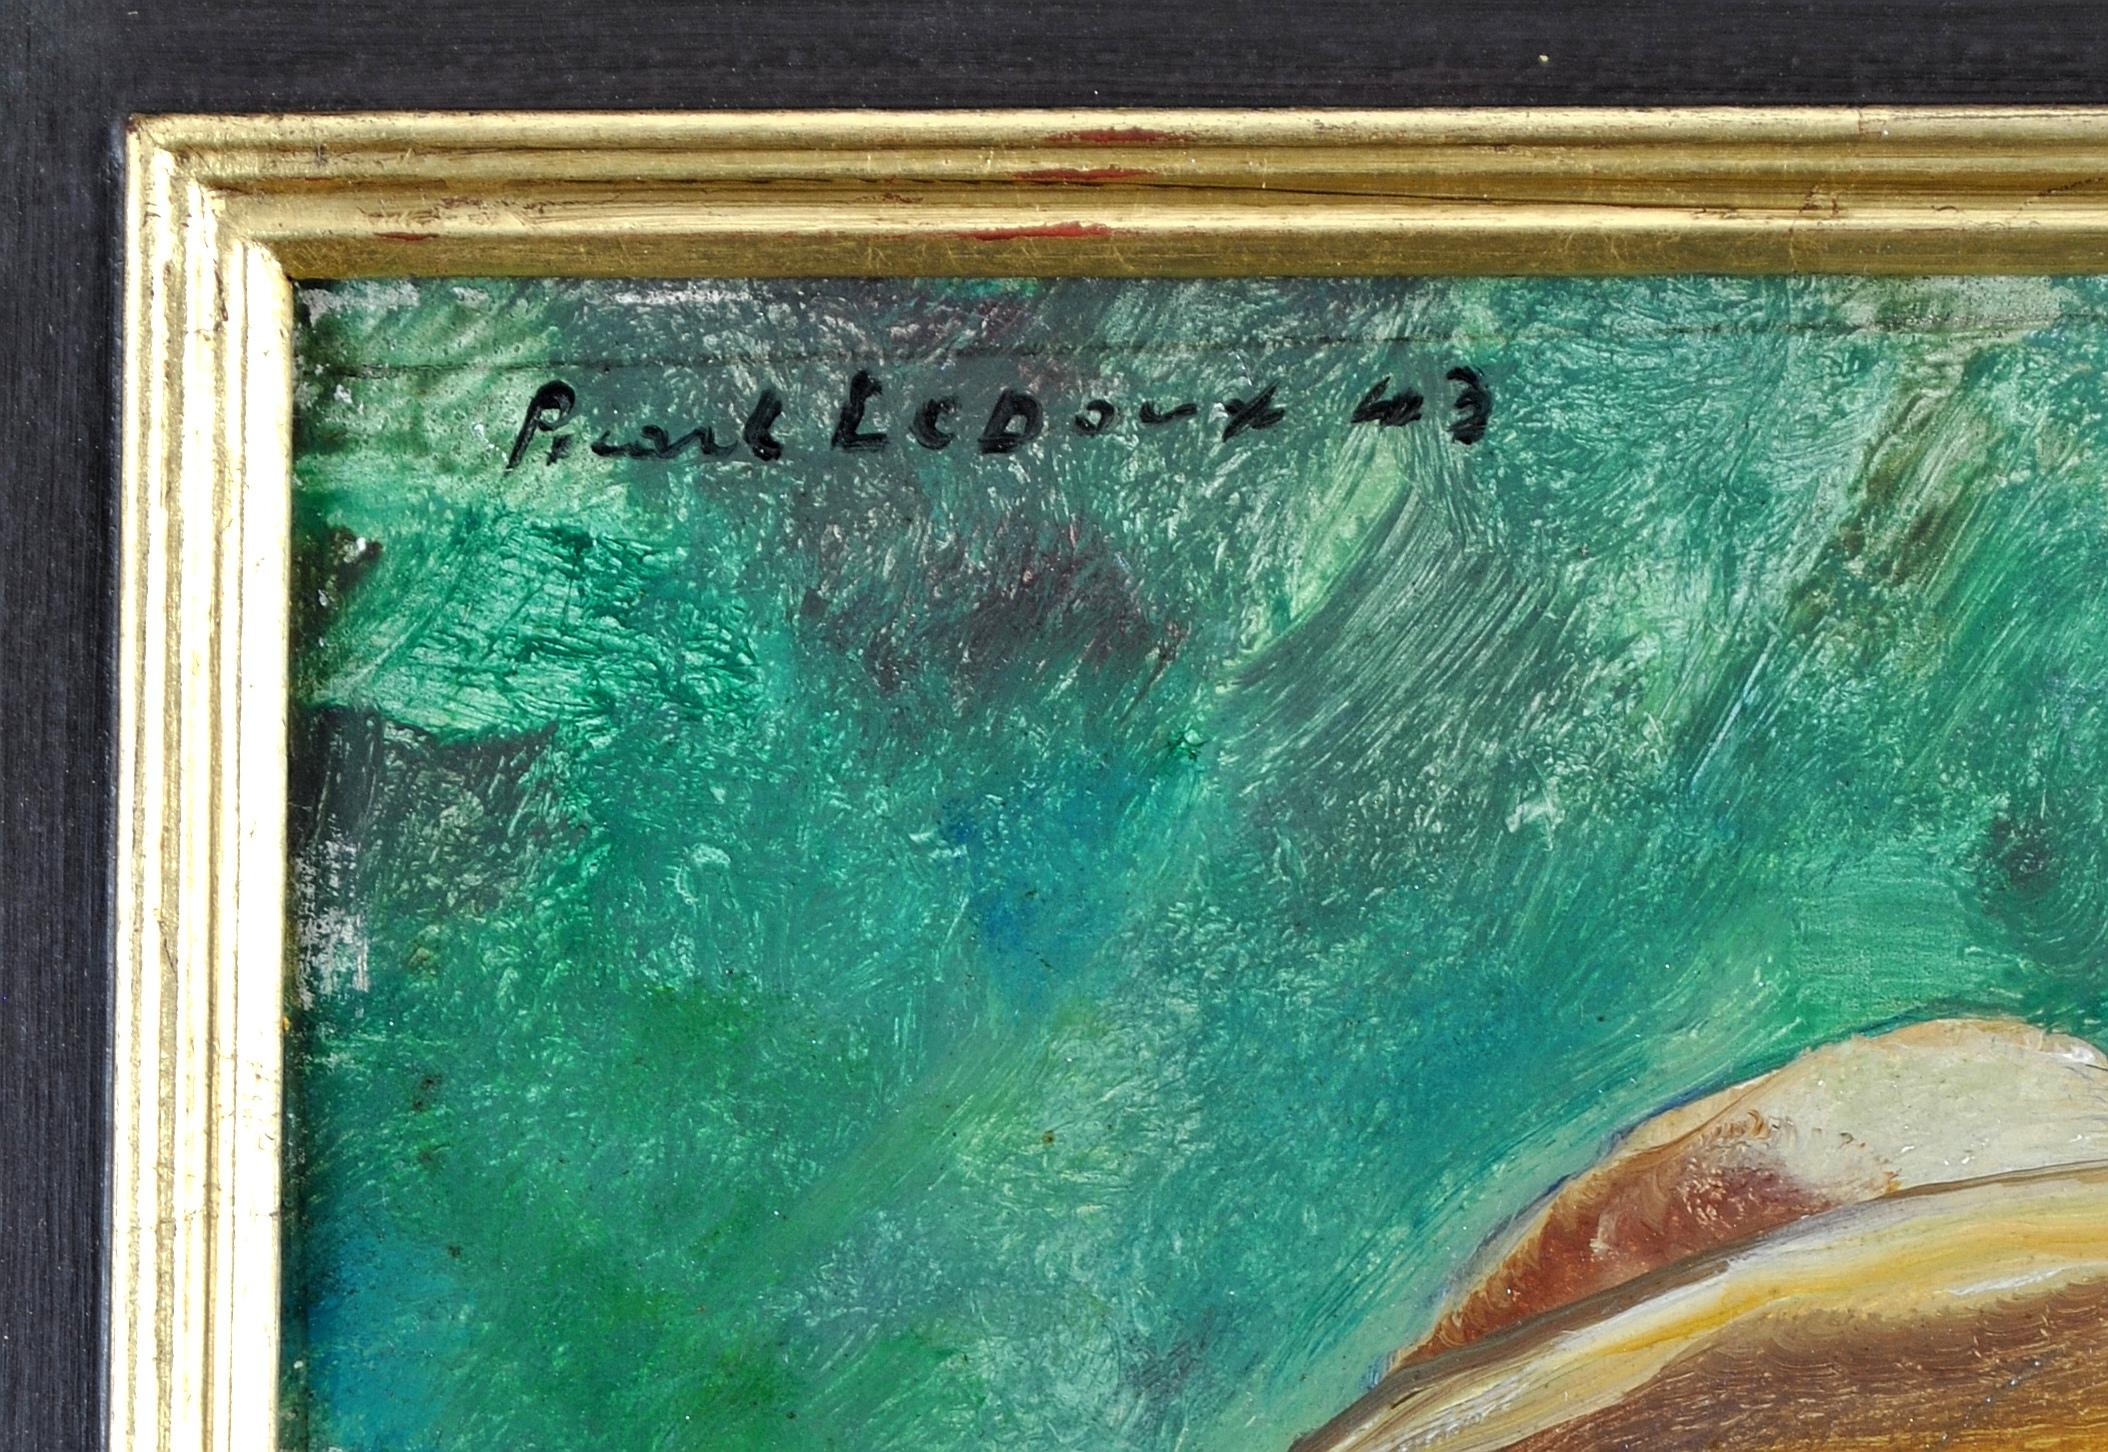 Magnifique autoportrait à l'huile impressionniste française sur panneau, signé et daté 1943, de Charles Picart le Doux, ami de Picasso, Pissarro et de nombreux autres artistes parisiens du début du 20e siècle.

Le Doux s'est représenté vêtu d'une